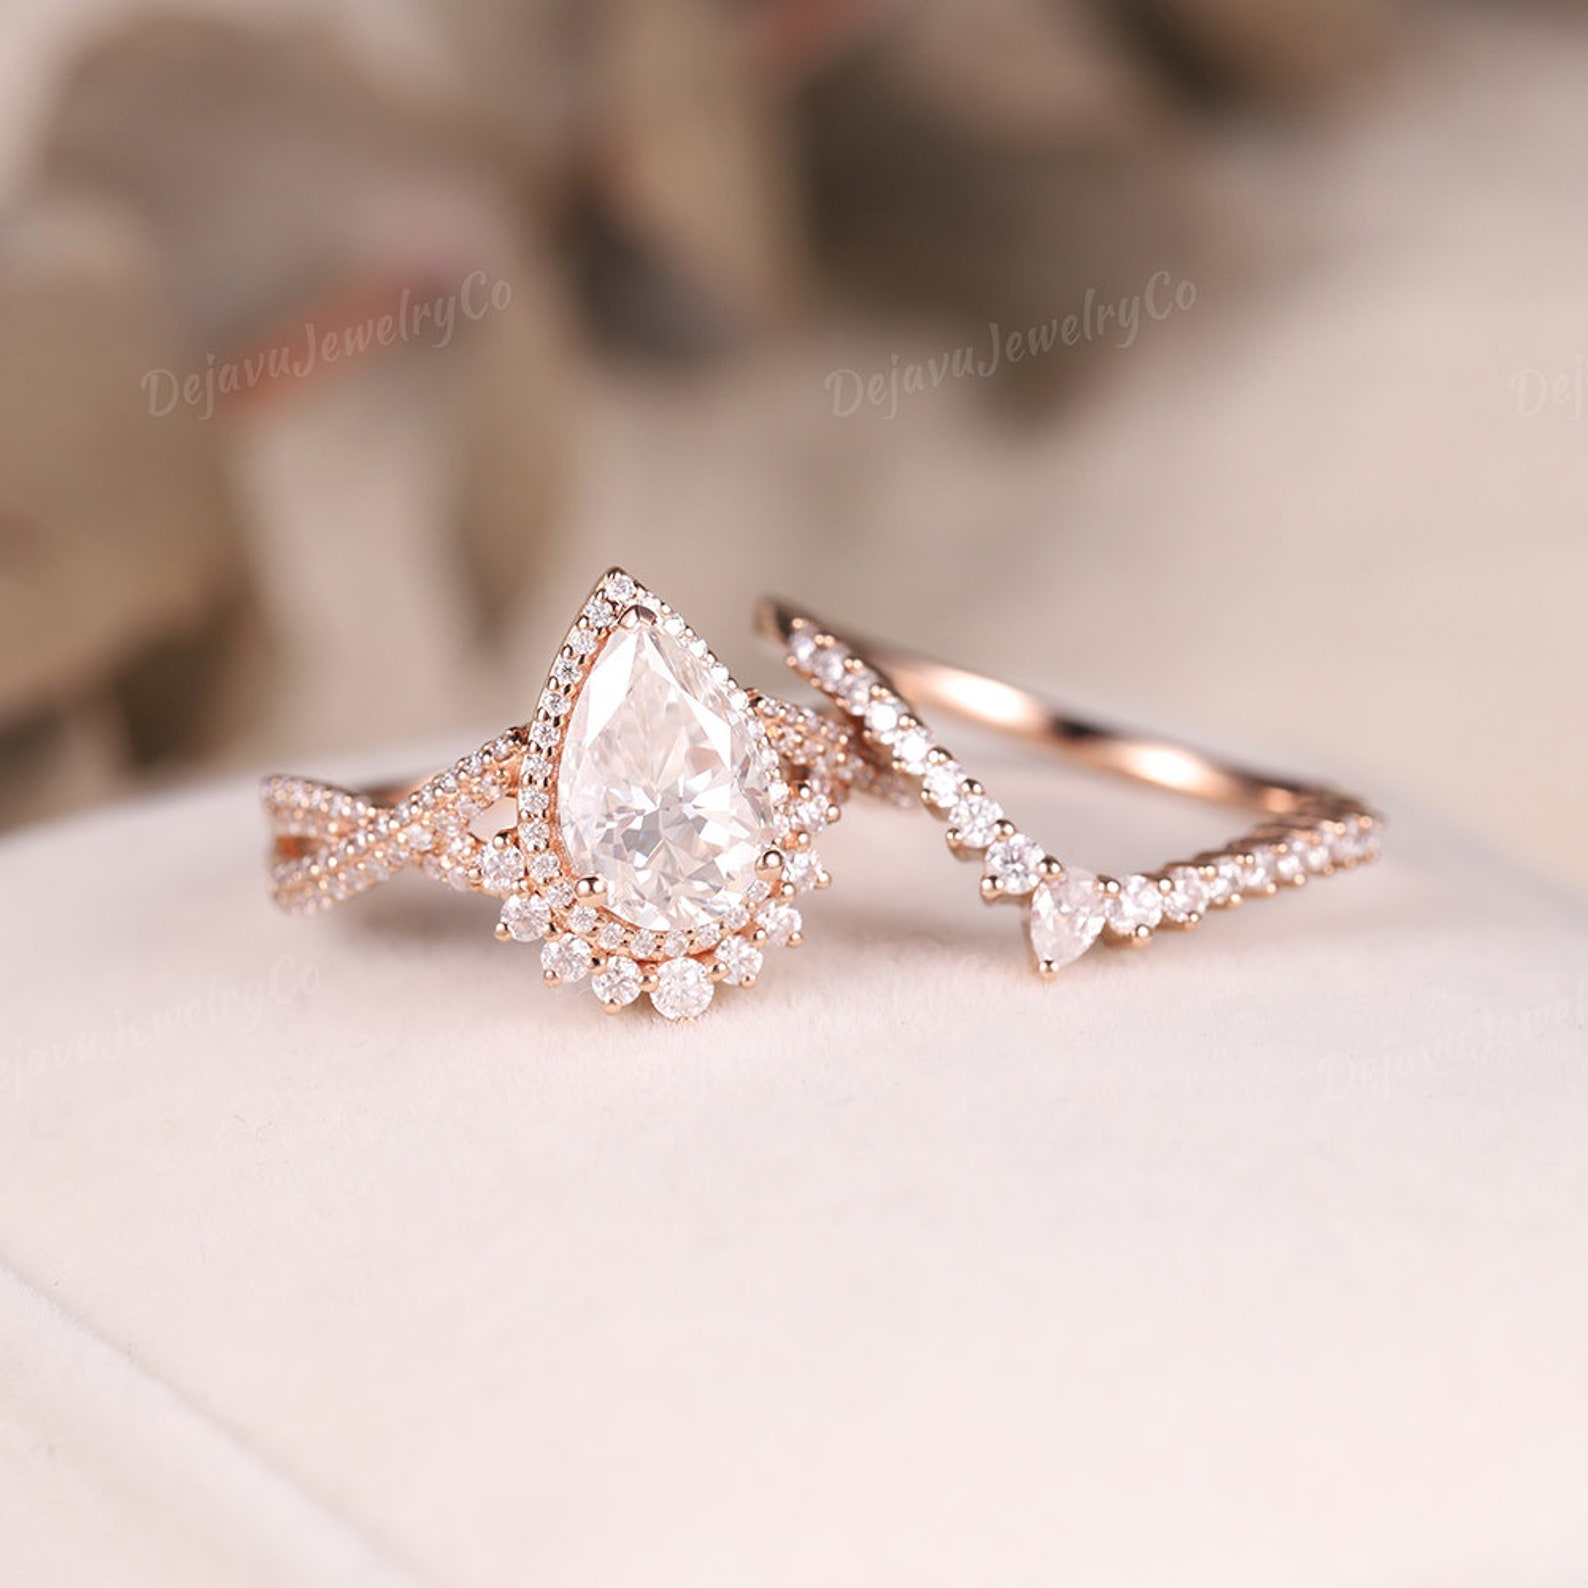 Unique Pear Shaped Moissanite Engagement Ring Set Art Deco - Etsy